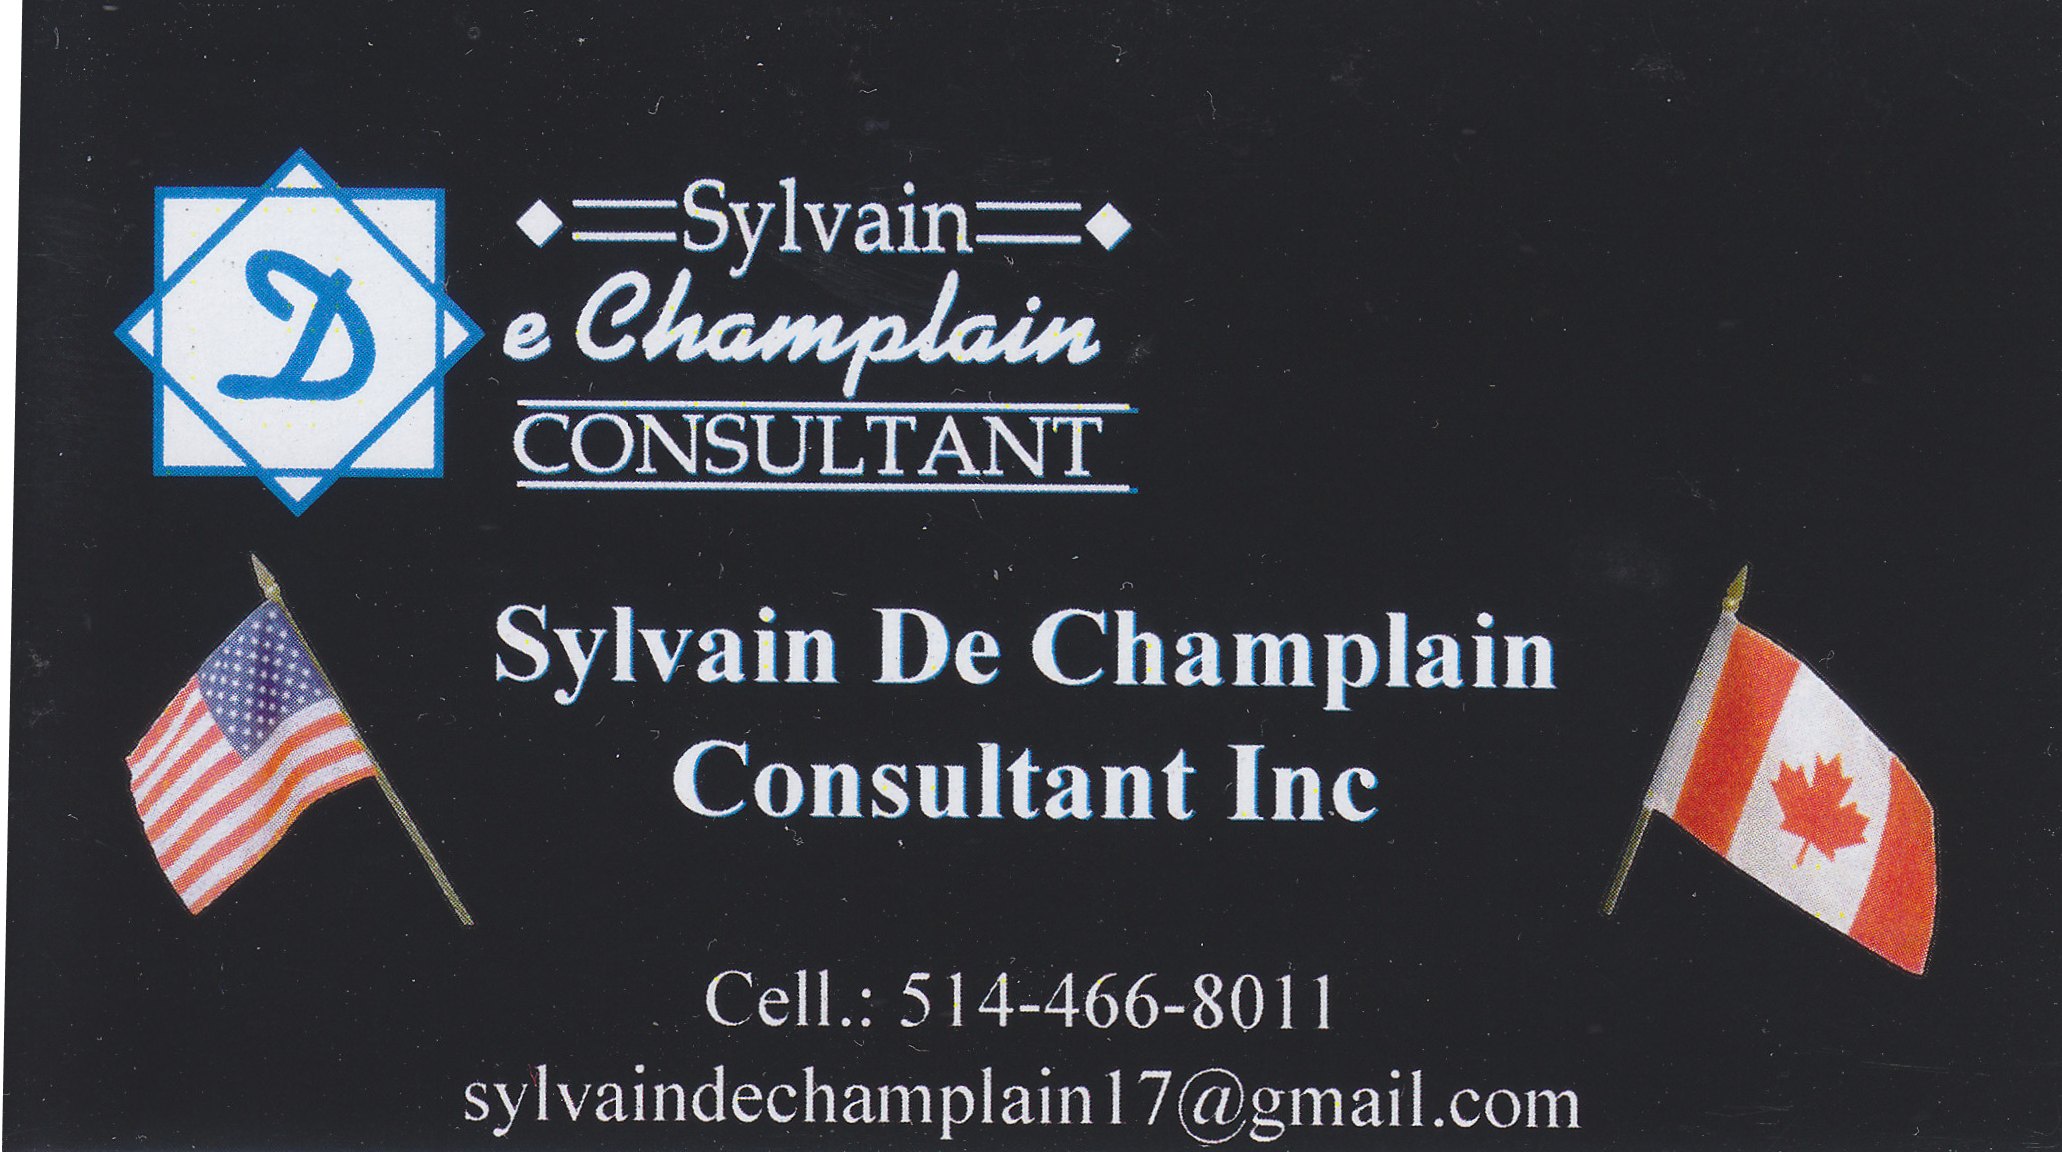 Sylvain de Champlain Consultant